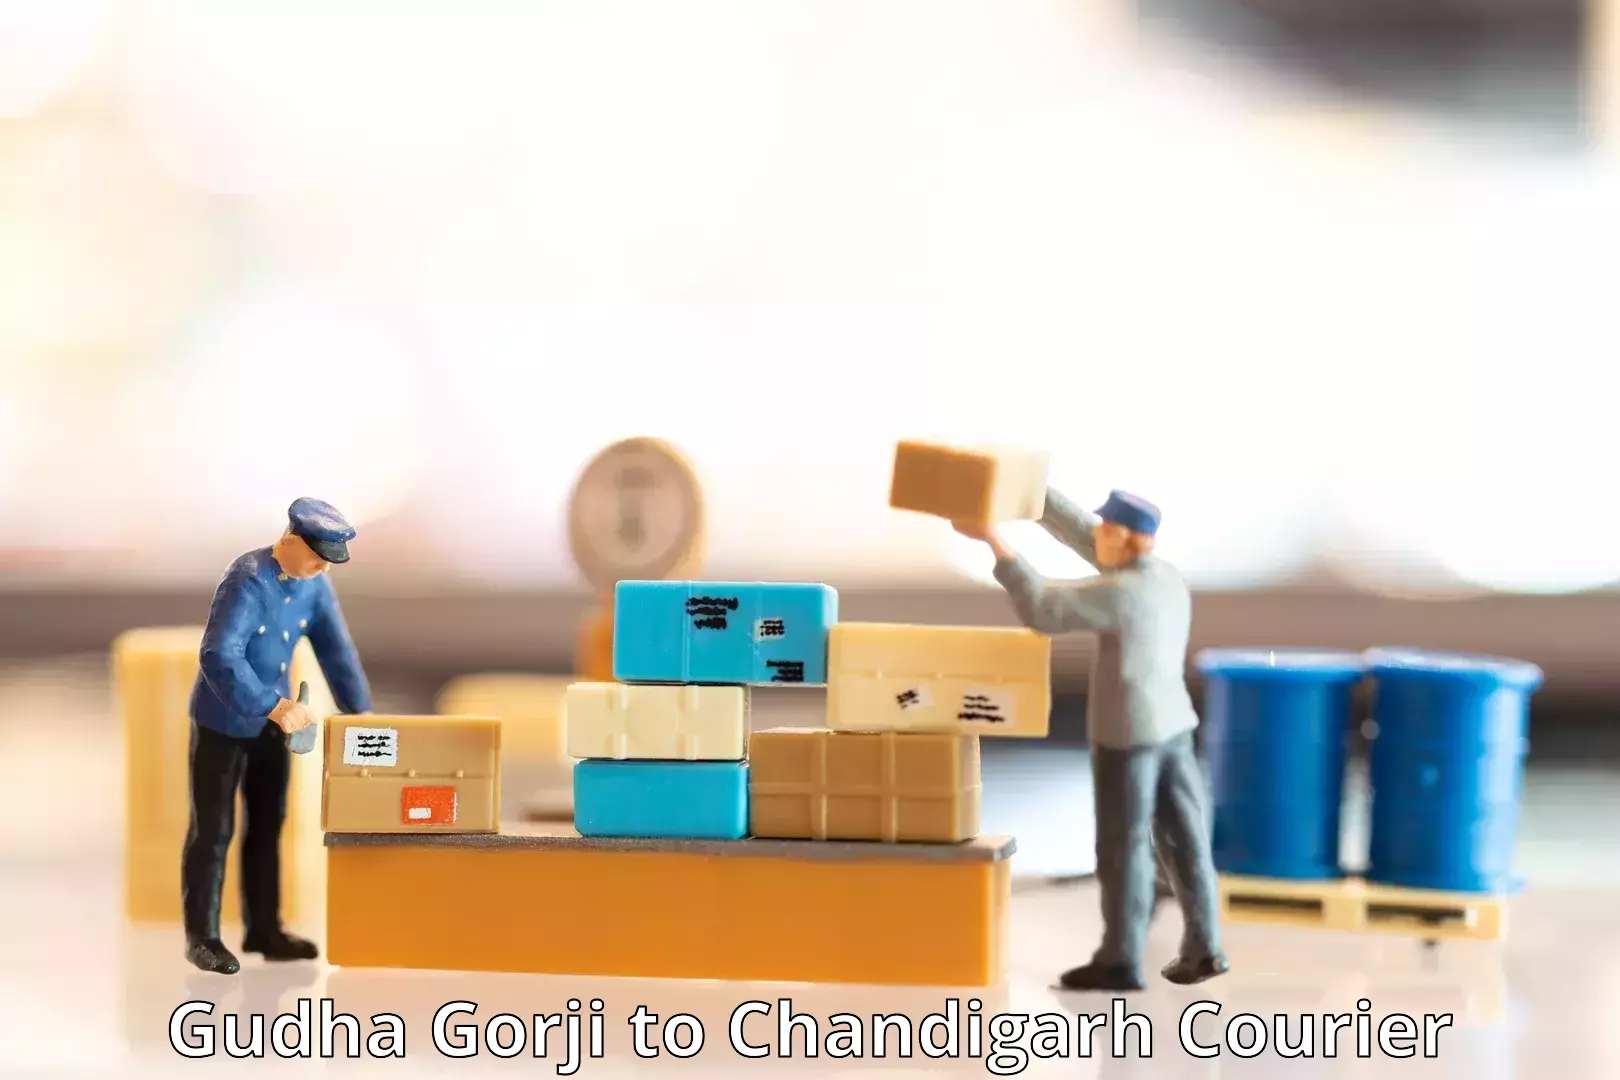 Express courier capabilities Gudha Gorji to Chandigarh